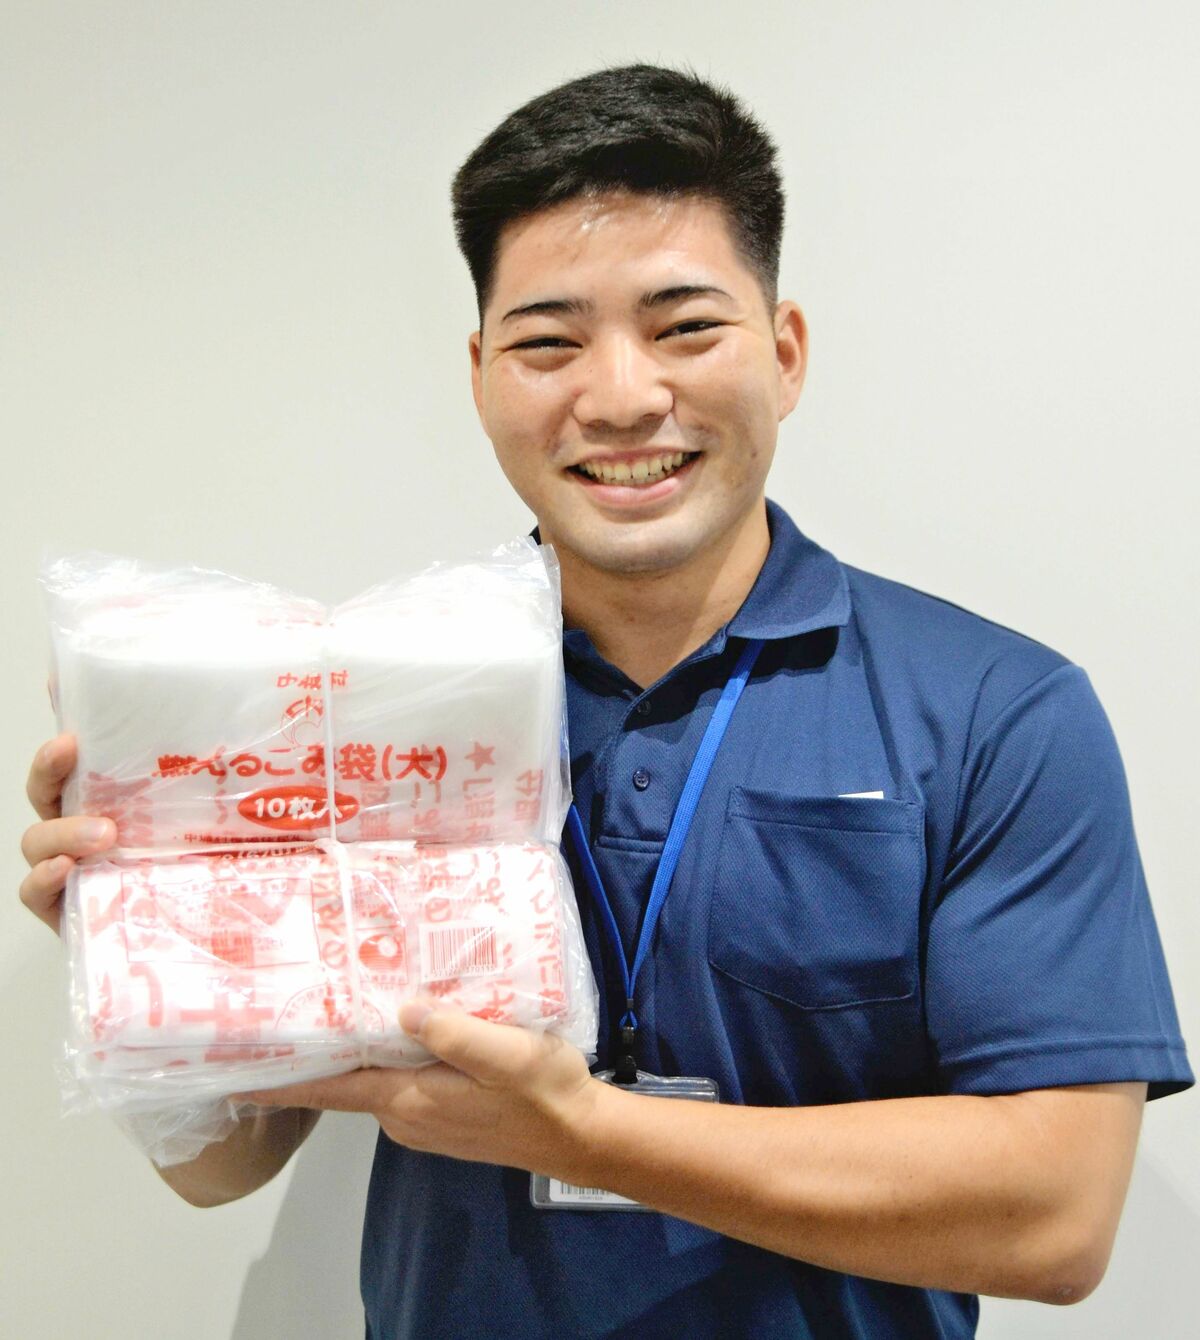 ごみ袋100枚を無料配布 県内初、中城村が全9466世帯に | 沖縄タイムス